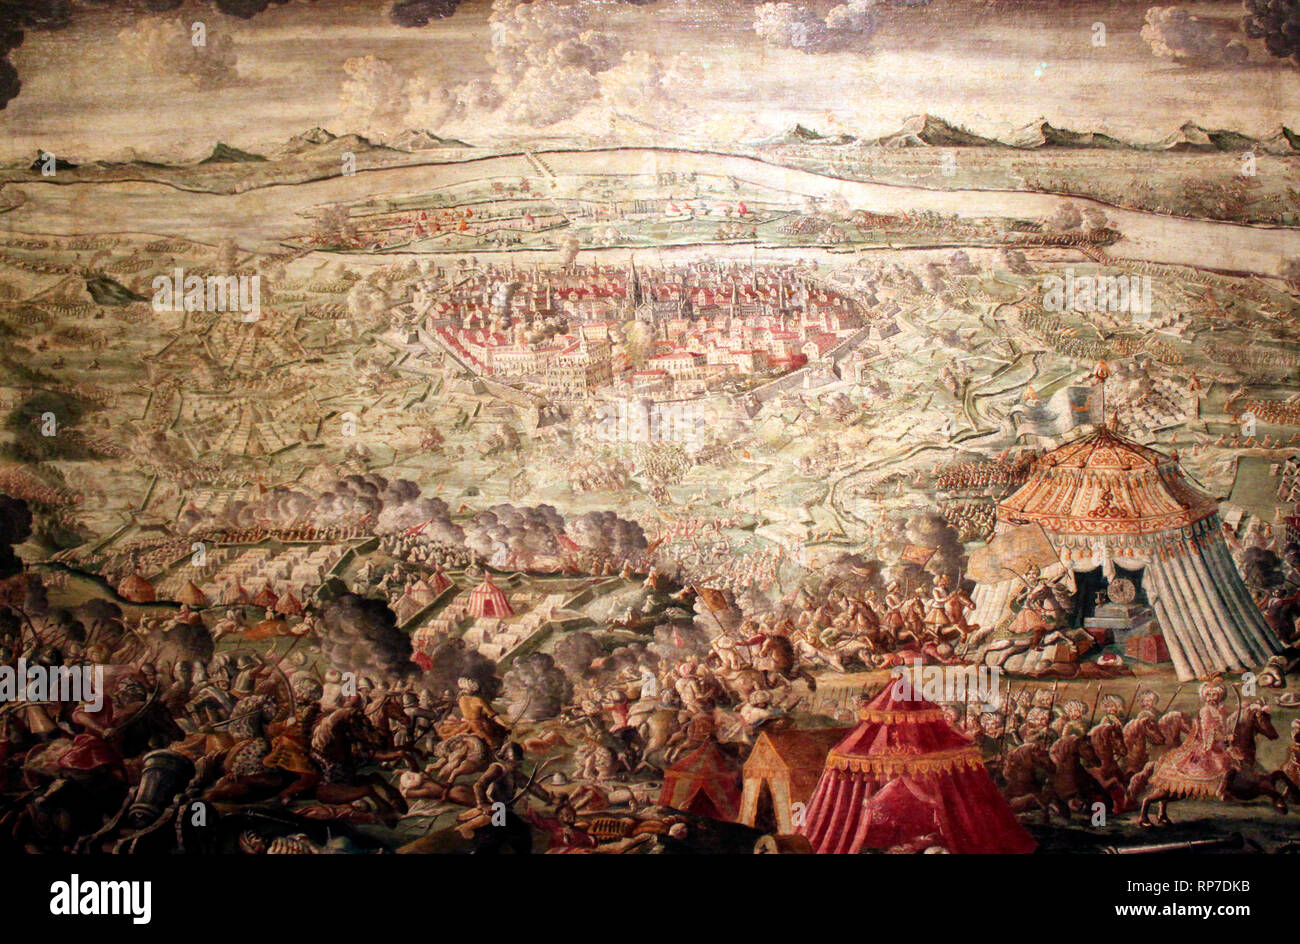 El alivio de Viena el 12 de septiembre de 1683 en la decisiva batalla de Kahlenberg, las naciones el ejército imperial de Viena logró liberar después de dos meses de asedio a manos del ejército turco. Foto de stock